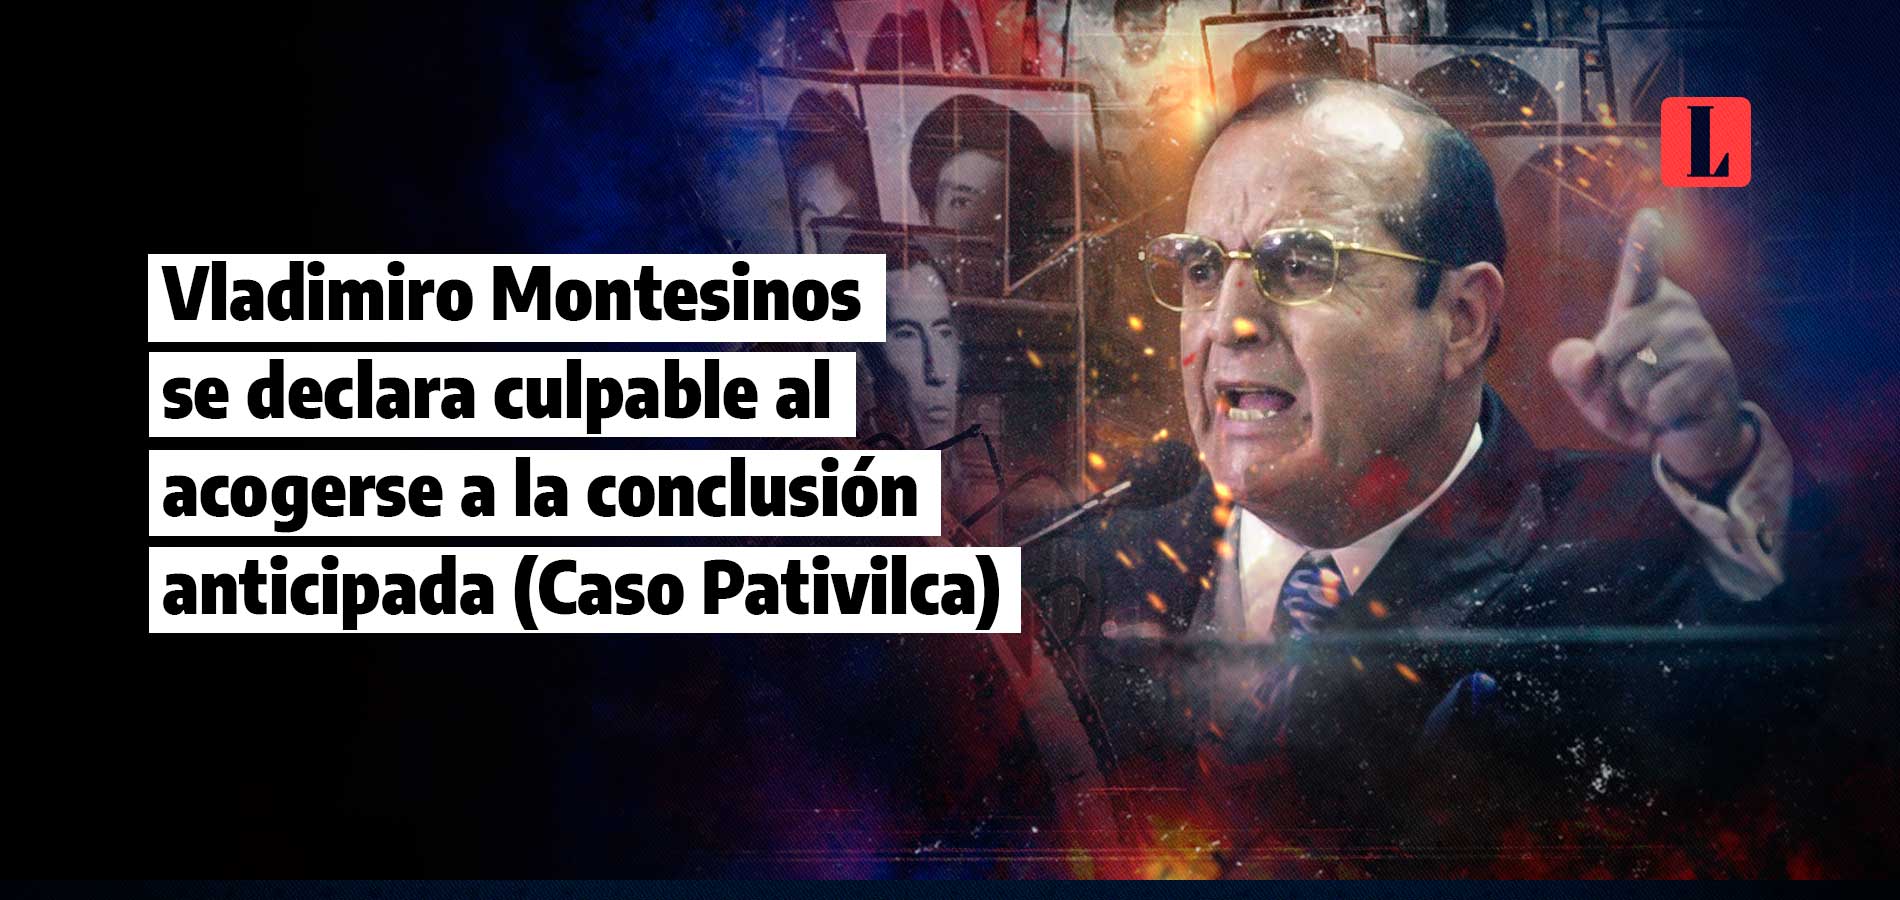 Vladimiro Montesinos se declara culpable al acogerse a la conclusión anticipada (Caso Pativilca)